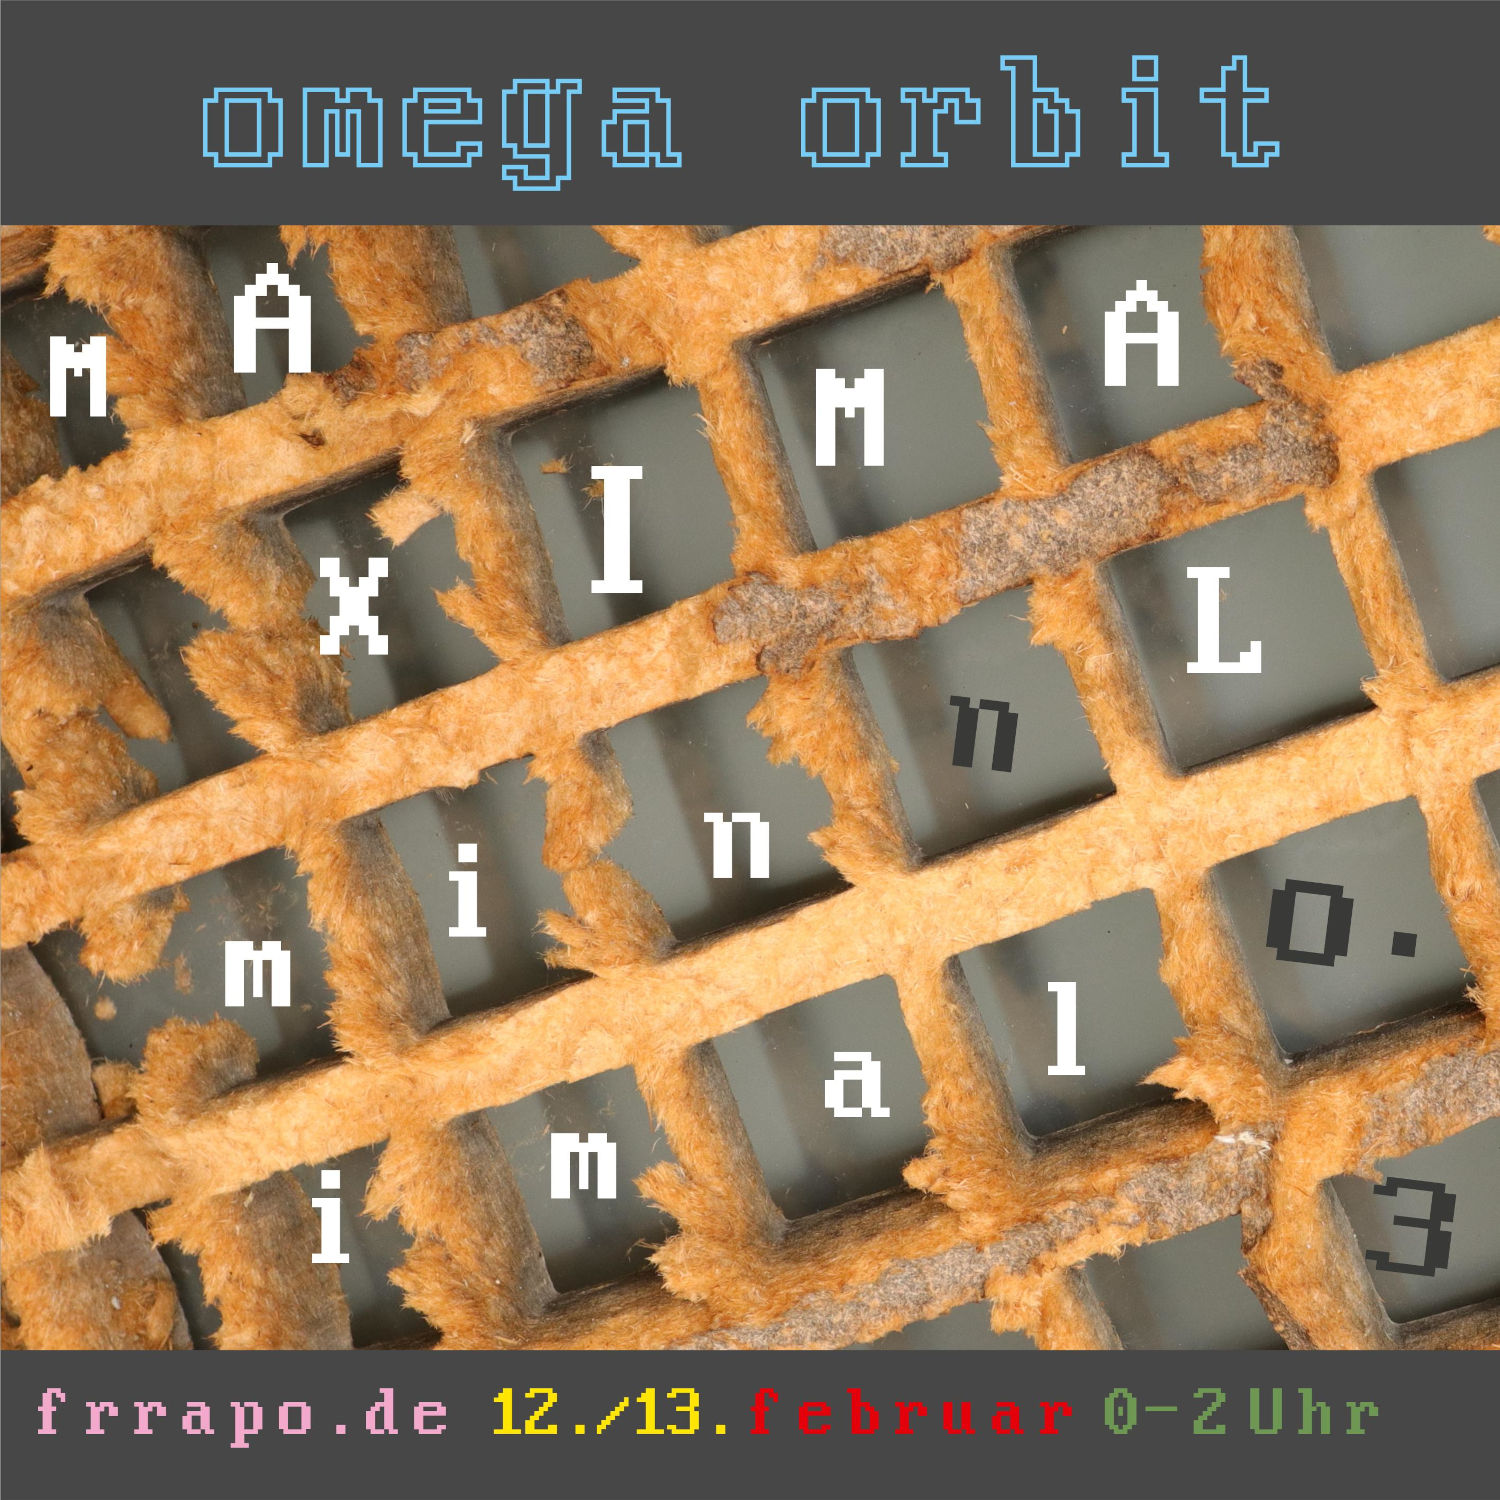 Omega-Orbit: MAXIMAL minimal No 3, am 12./13. Jan. von 0-2 Uhr